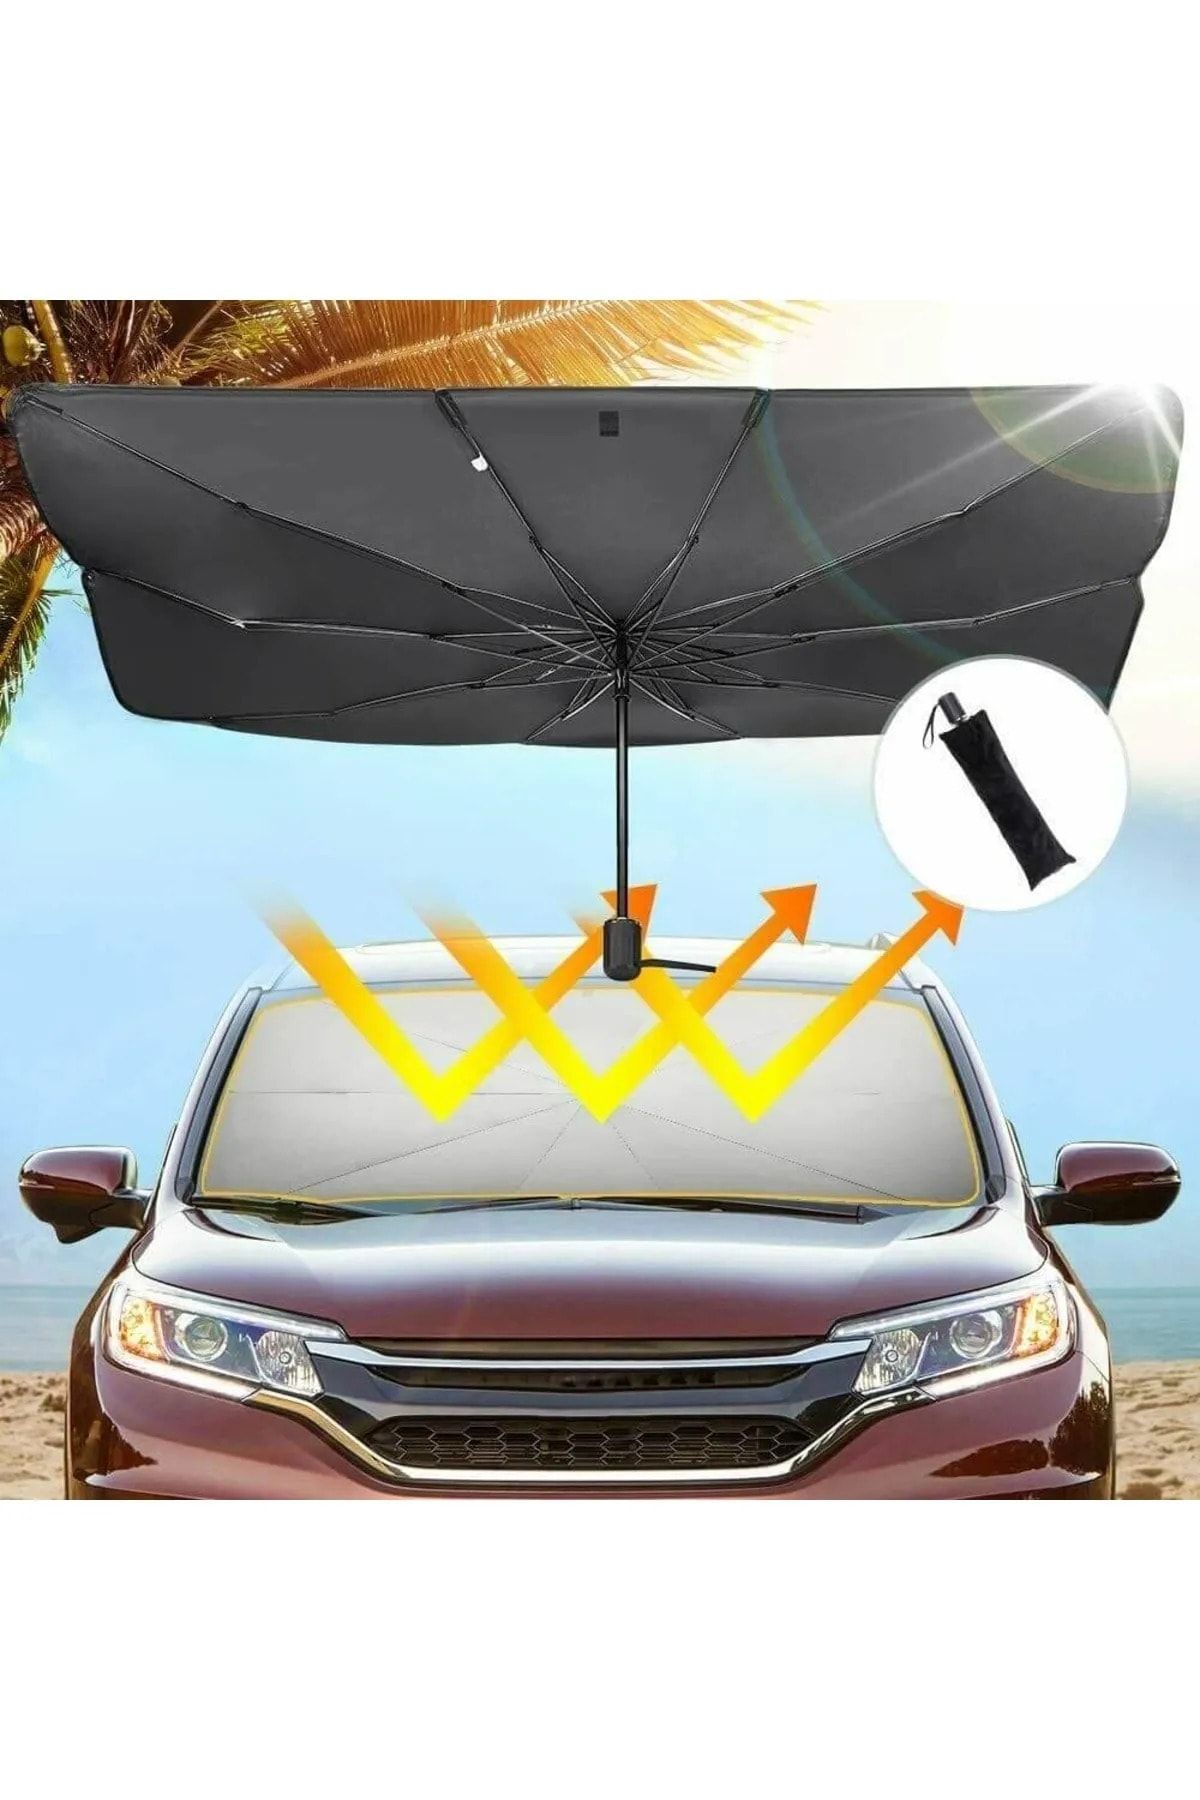 Universal Opel Crossland Araba Ön Cam Güneşlik Katlanabilir Güneşlik Şemsiye Ön Cam Gölgelik